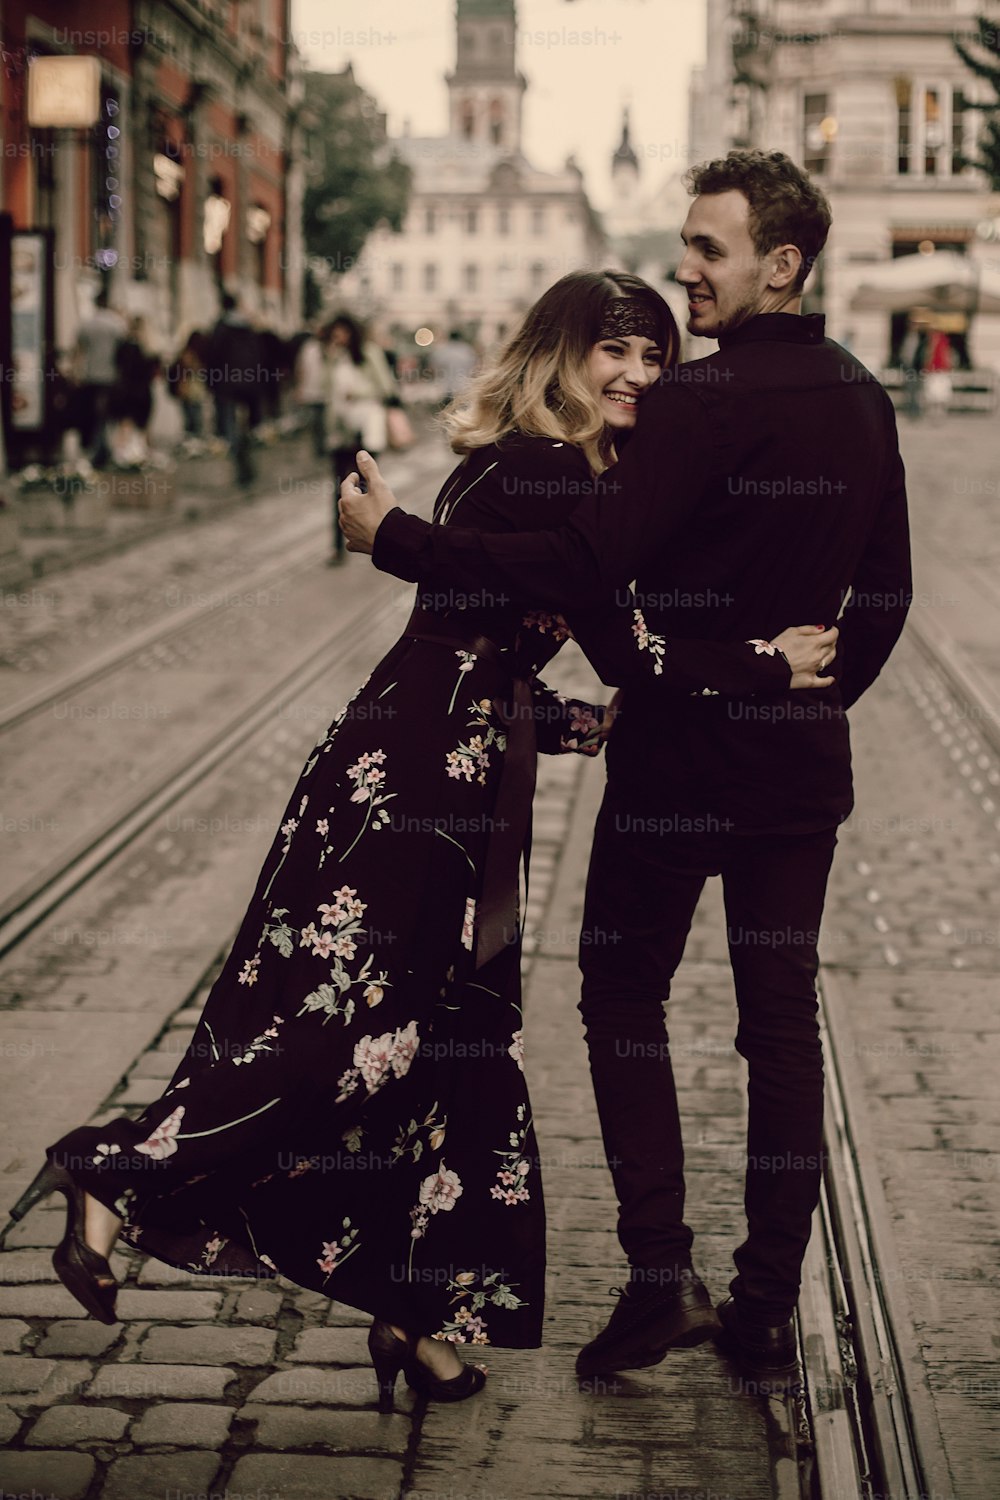 Stilvolles Zigeunerpaar verliebt, das in der abendlichen Stadtstraße spazieren geht und lächelt. Frau und Mann umarmen sich sanft, lustiger romantischer französischer atmosphärischer Moment. Liebesstimmung. Rückansicht